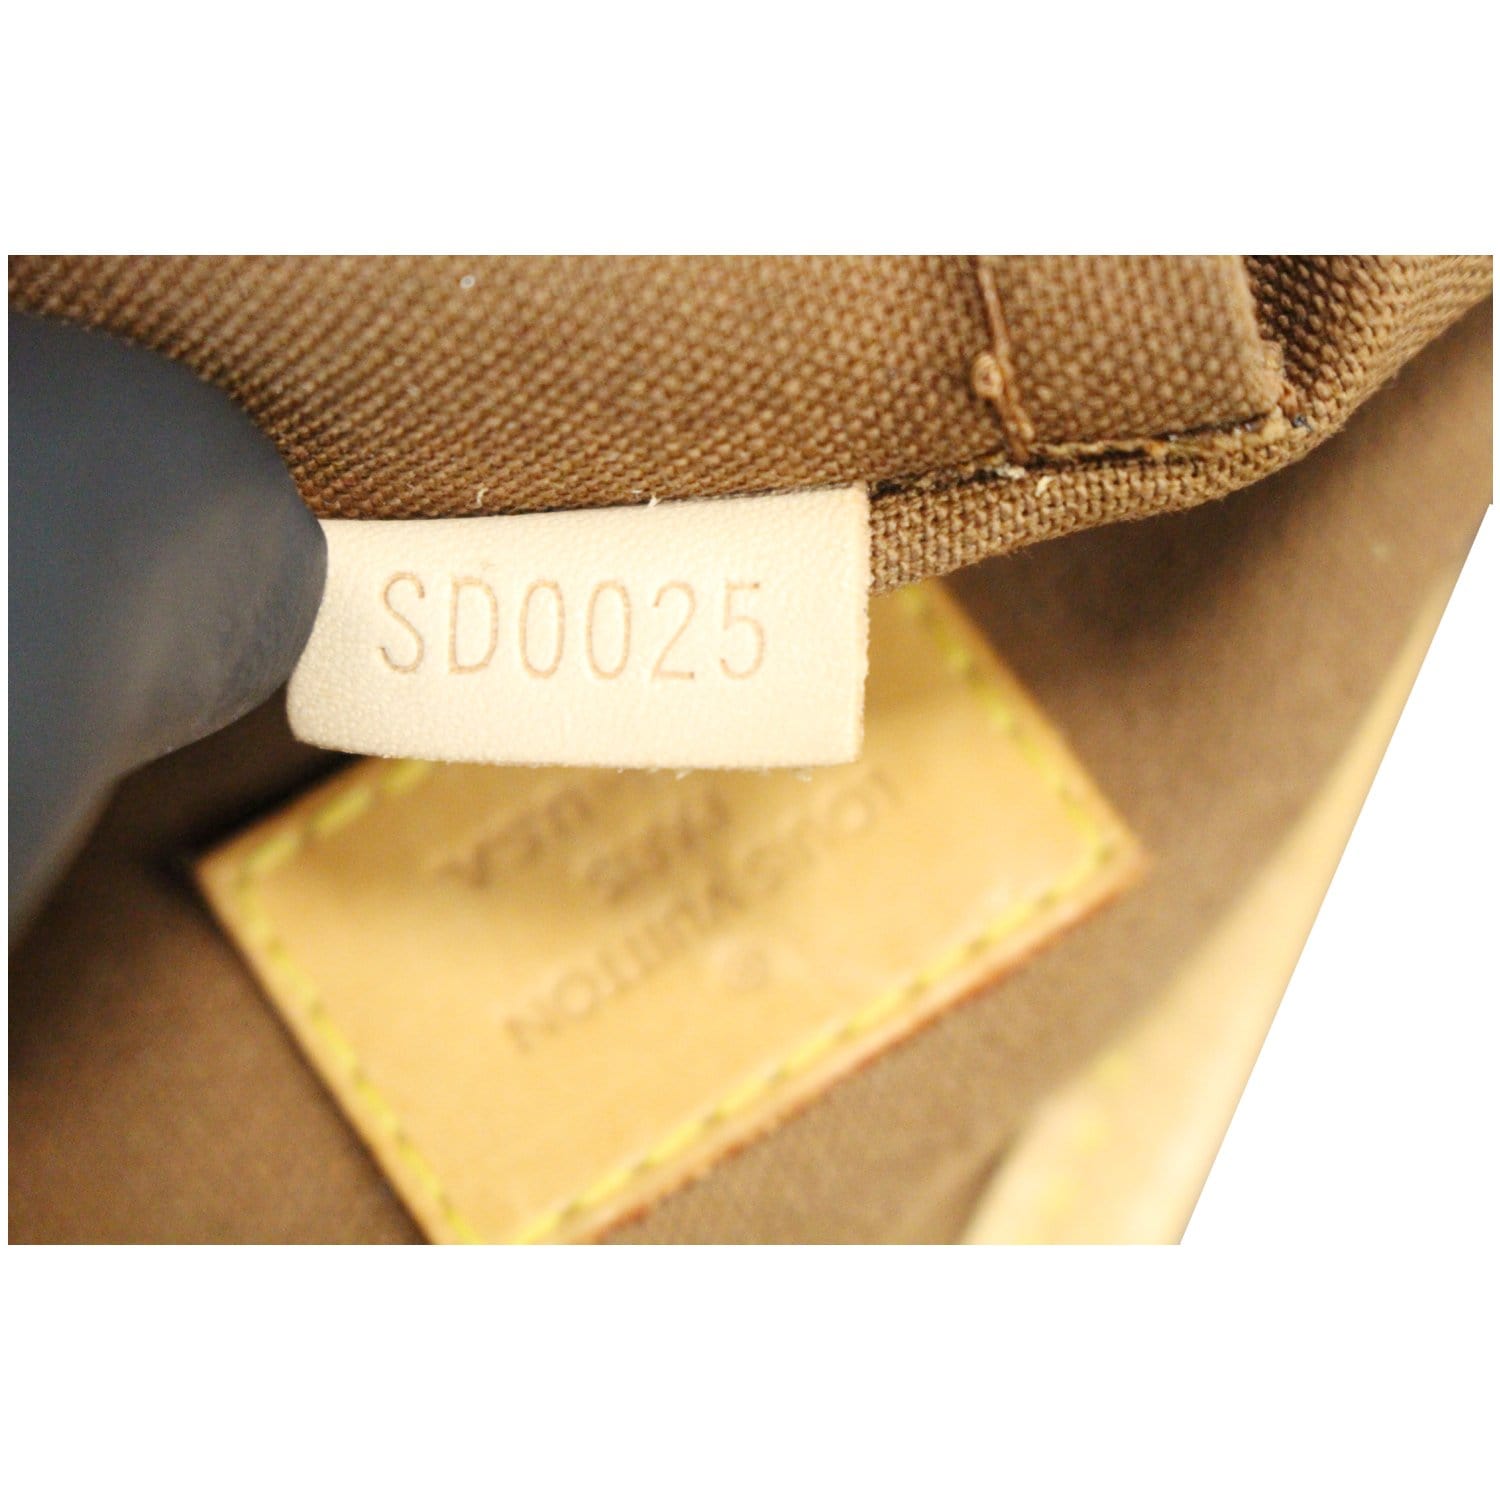 Batignolles cloth handbag Louis Vuitton Brown in Cloth - 37944250